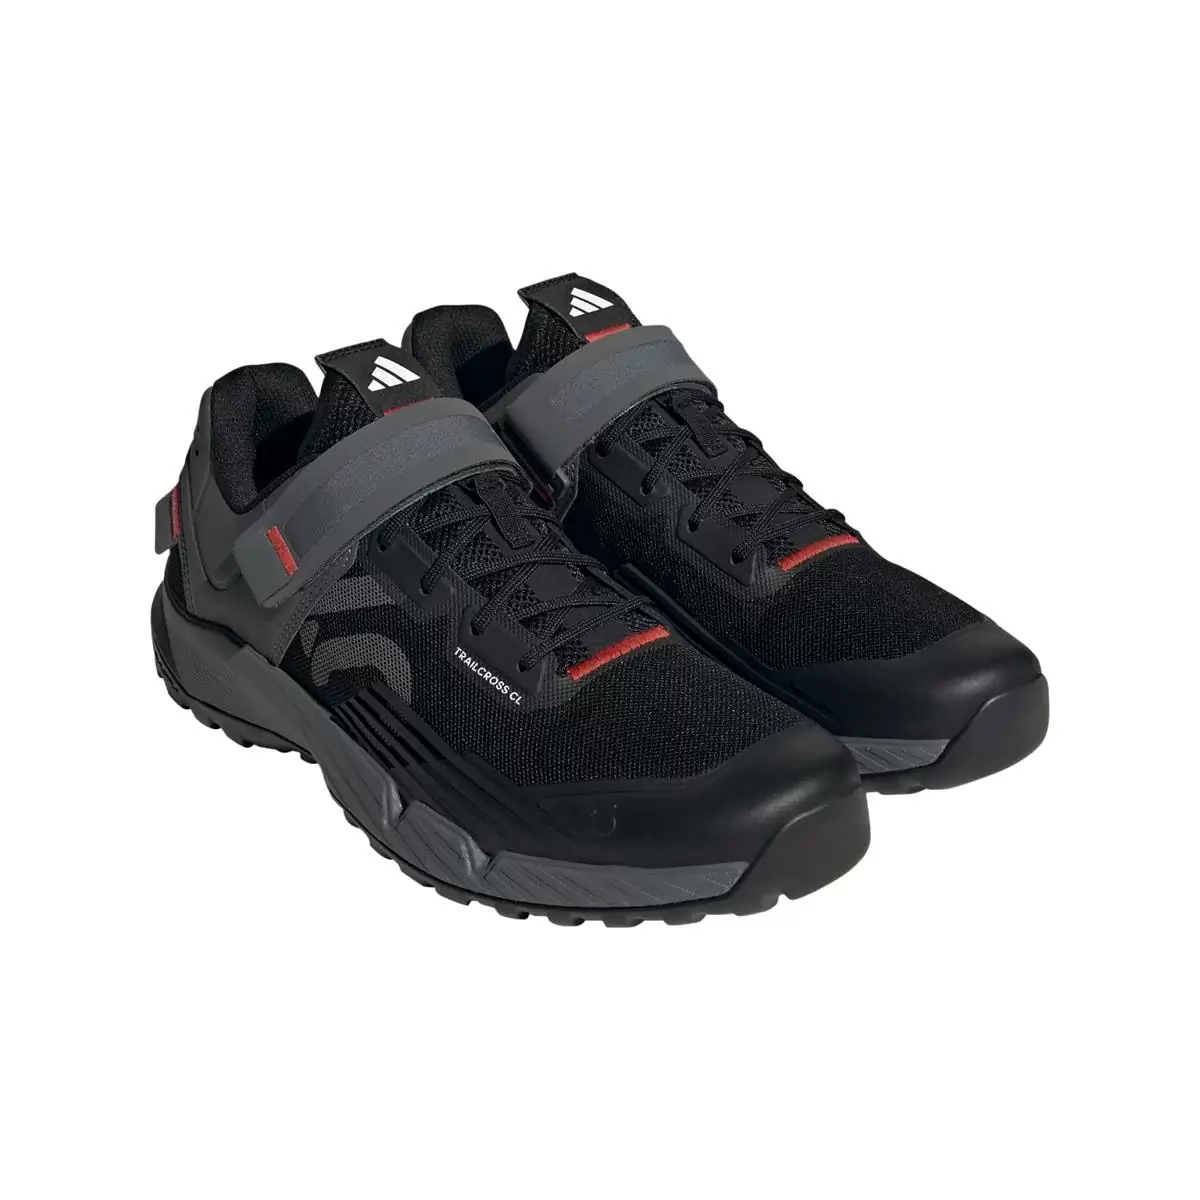 Clip 5.10 Trailcross MTB Shoes Black/Grey Size 41.5 #1